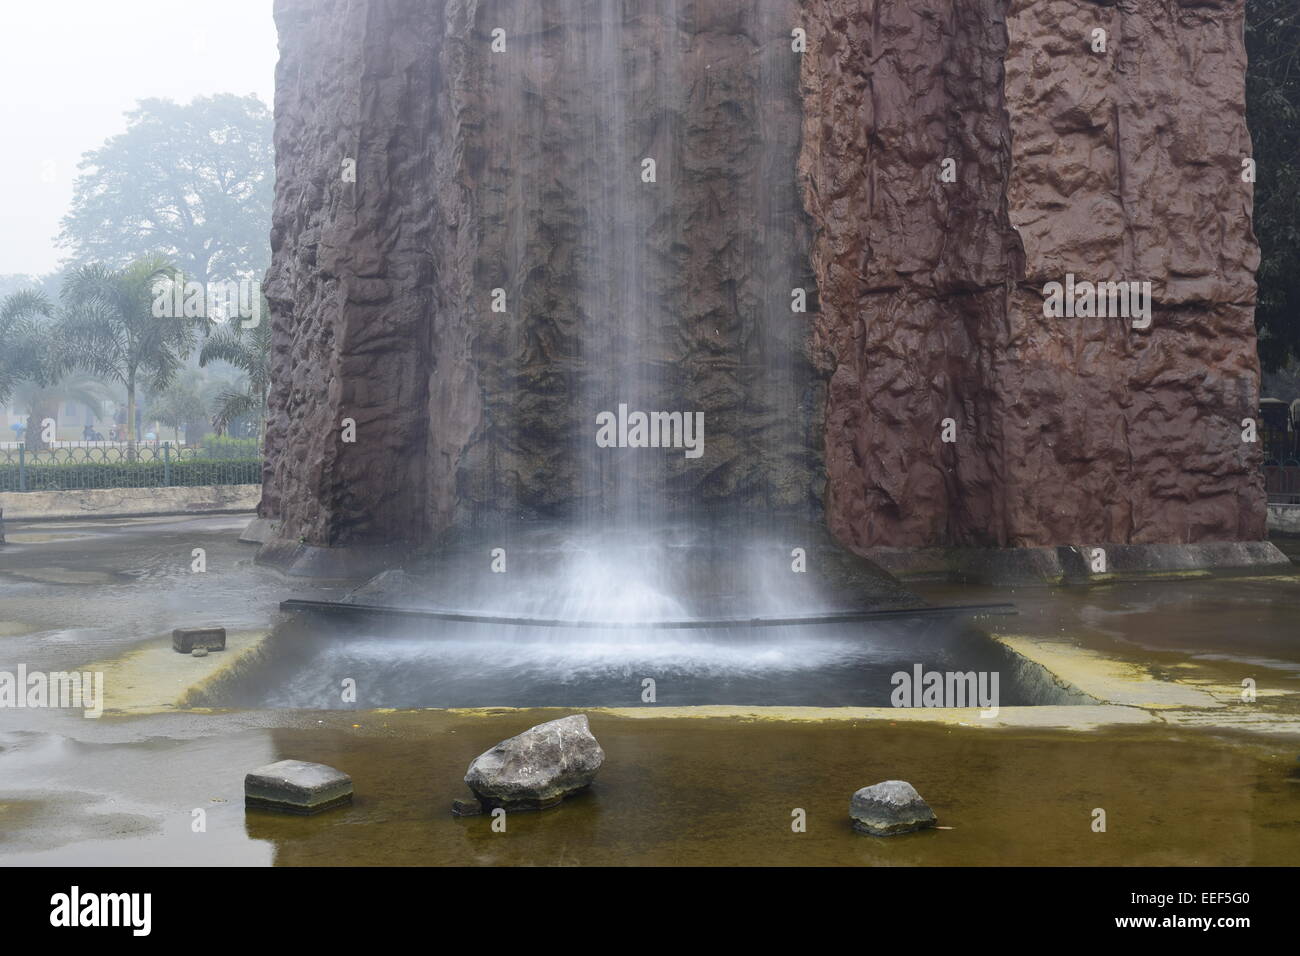 3 Steinen in der Nähe von einem künstlichen Wasserfall. Stockfoto